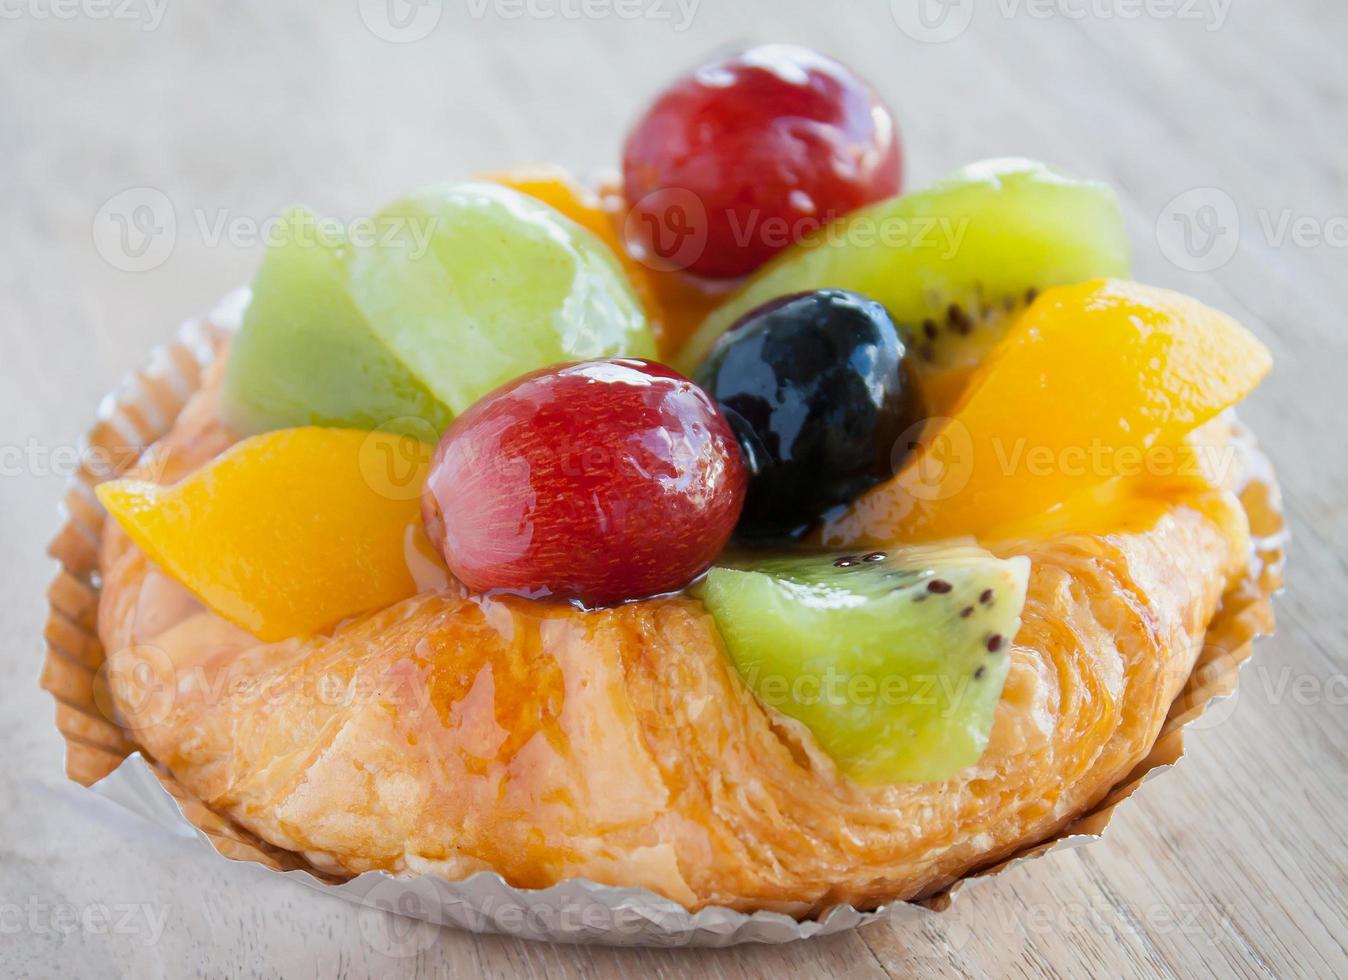 fechar a pastelaria dinamarquesa com frutas na mesa de madeira foto